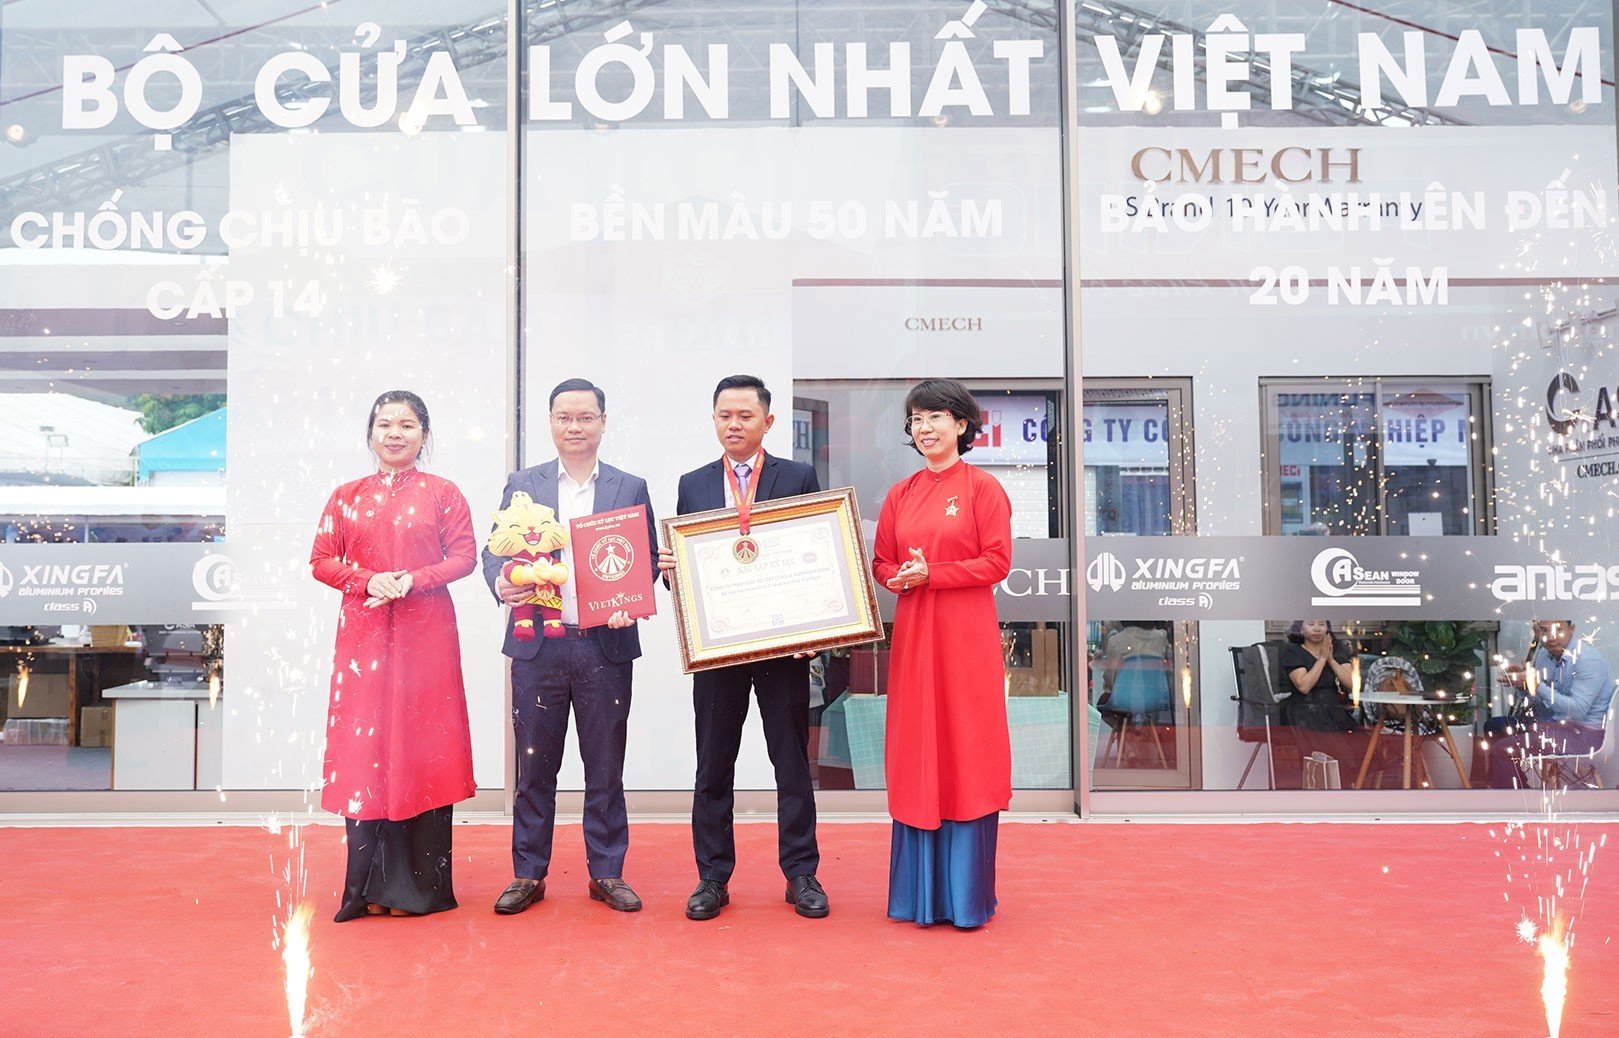 Đại diện Công ty TNHH Cửa sổ Việt châu Á (AseanWindow) nhận xác lập kỷ lục.